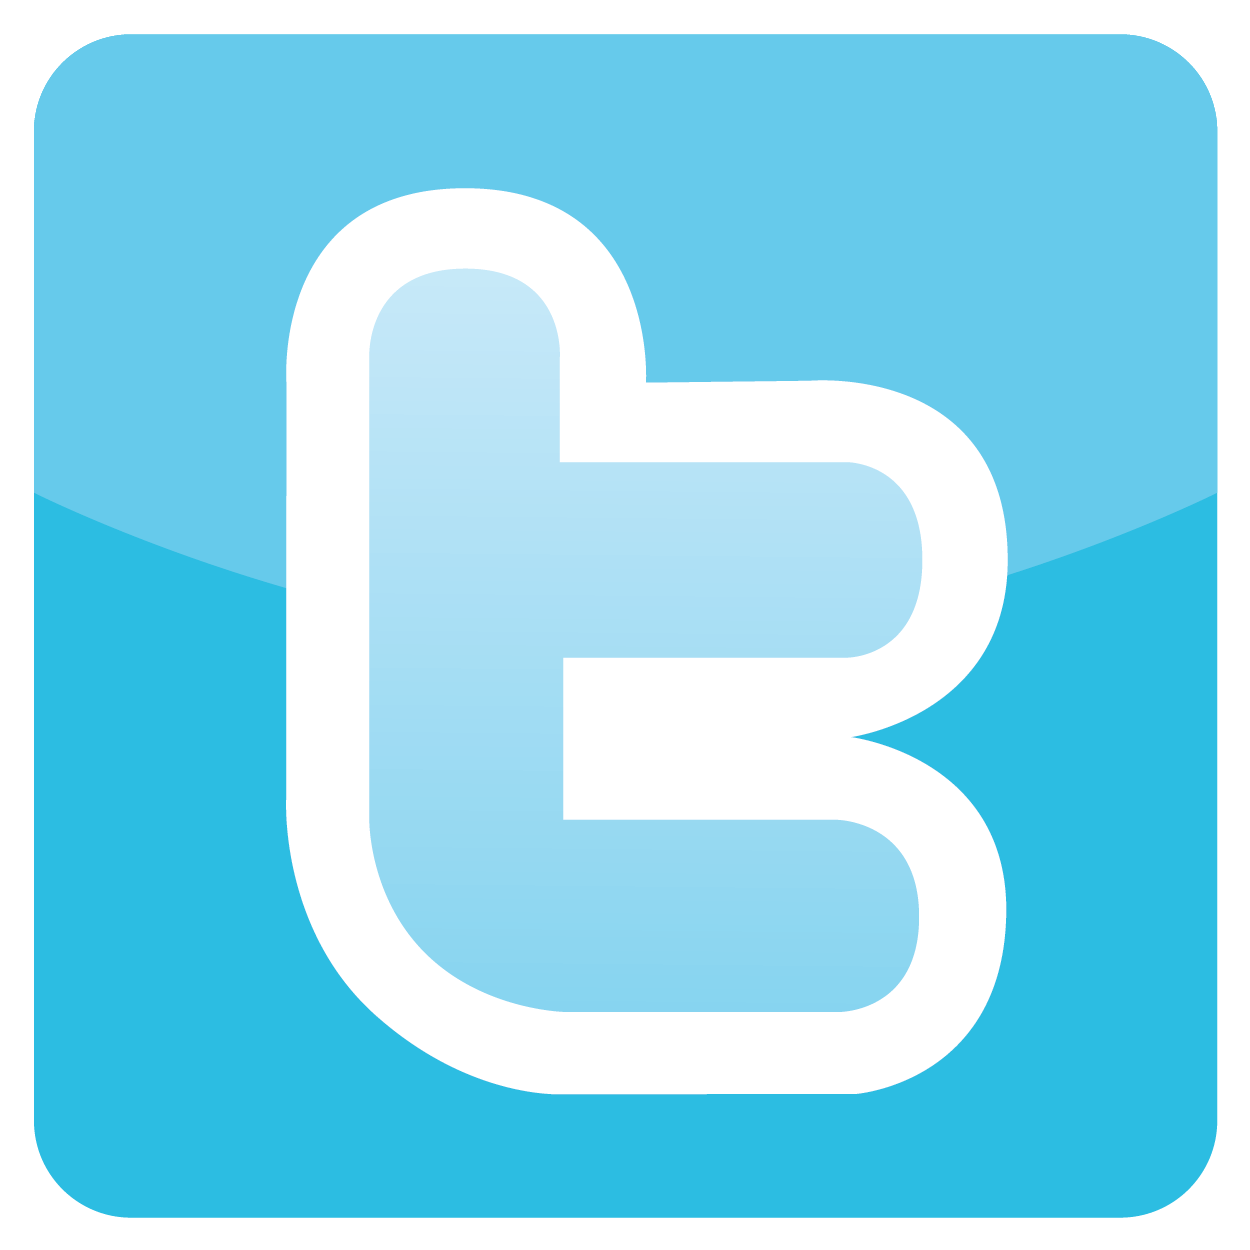 Facebook Logo Media Twitter Design Social Iconfinder PNG Image